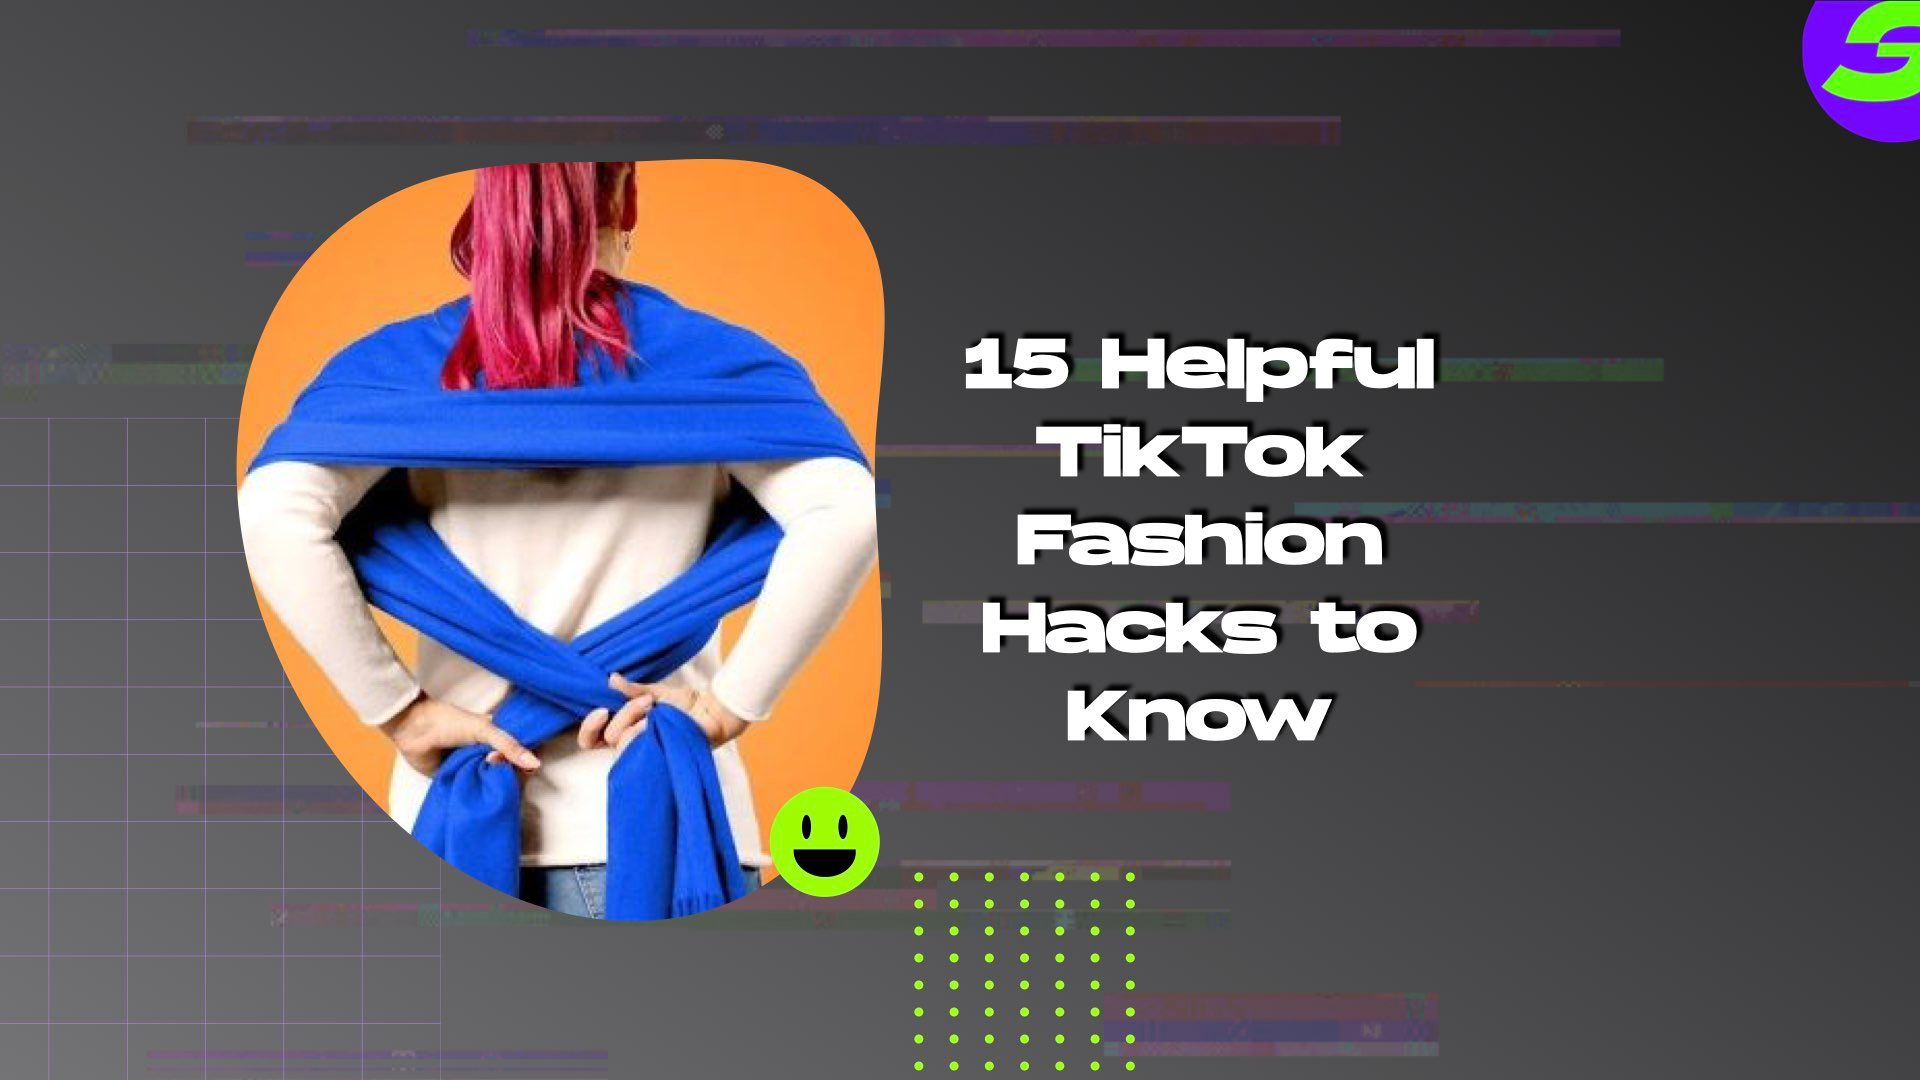 shotcut free video editor android 15 Helpful TikTok Fashion Hacks